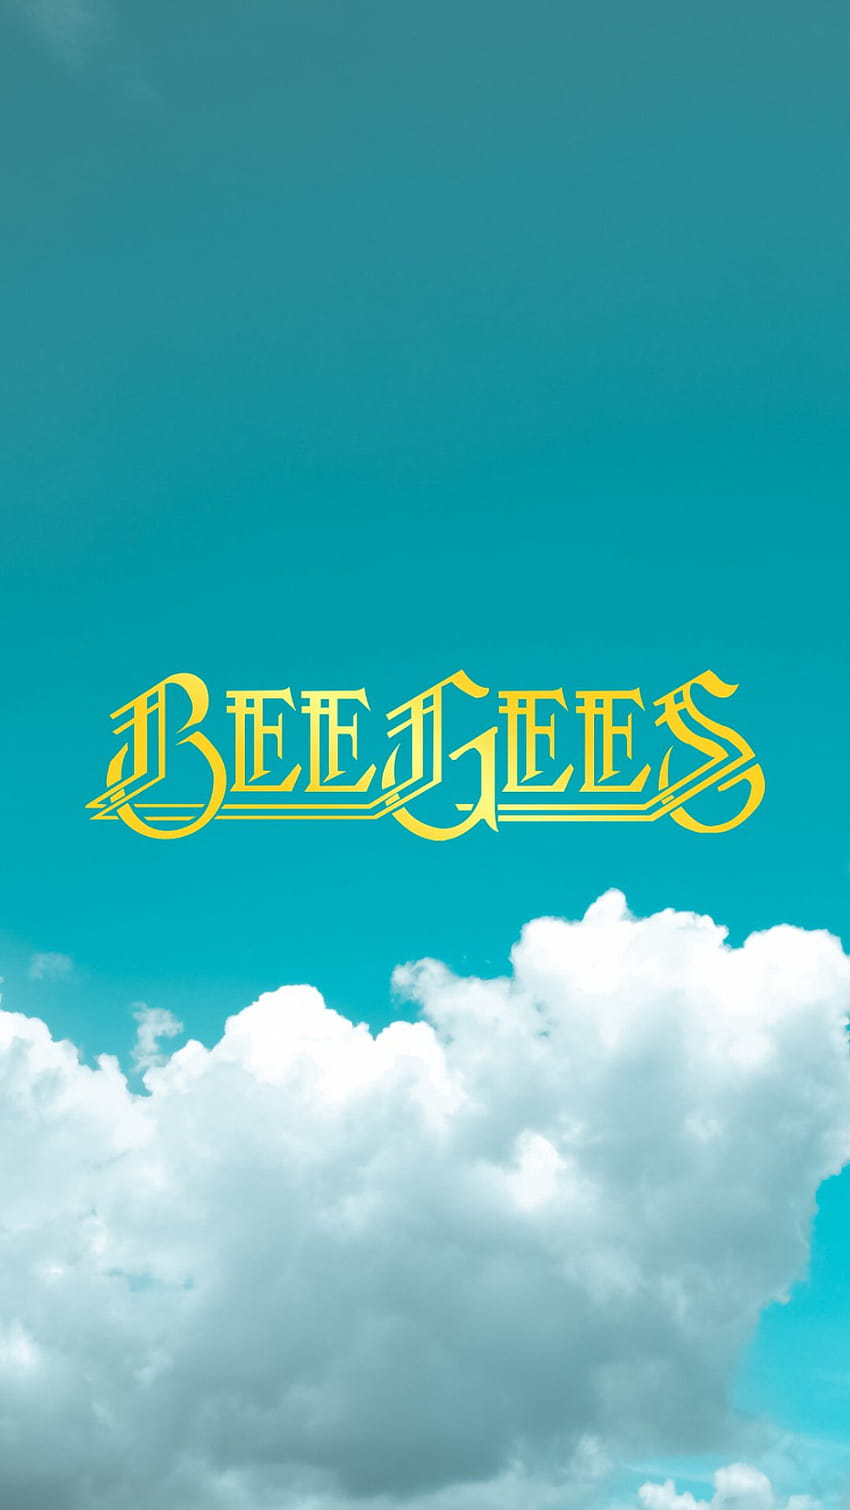 Bee Gees sur Twitter en 2020, le logo des bee gees Fond d'écran de téléphone HD